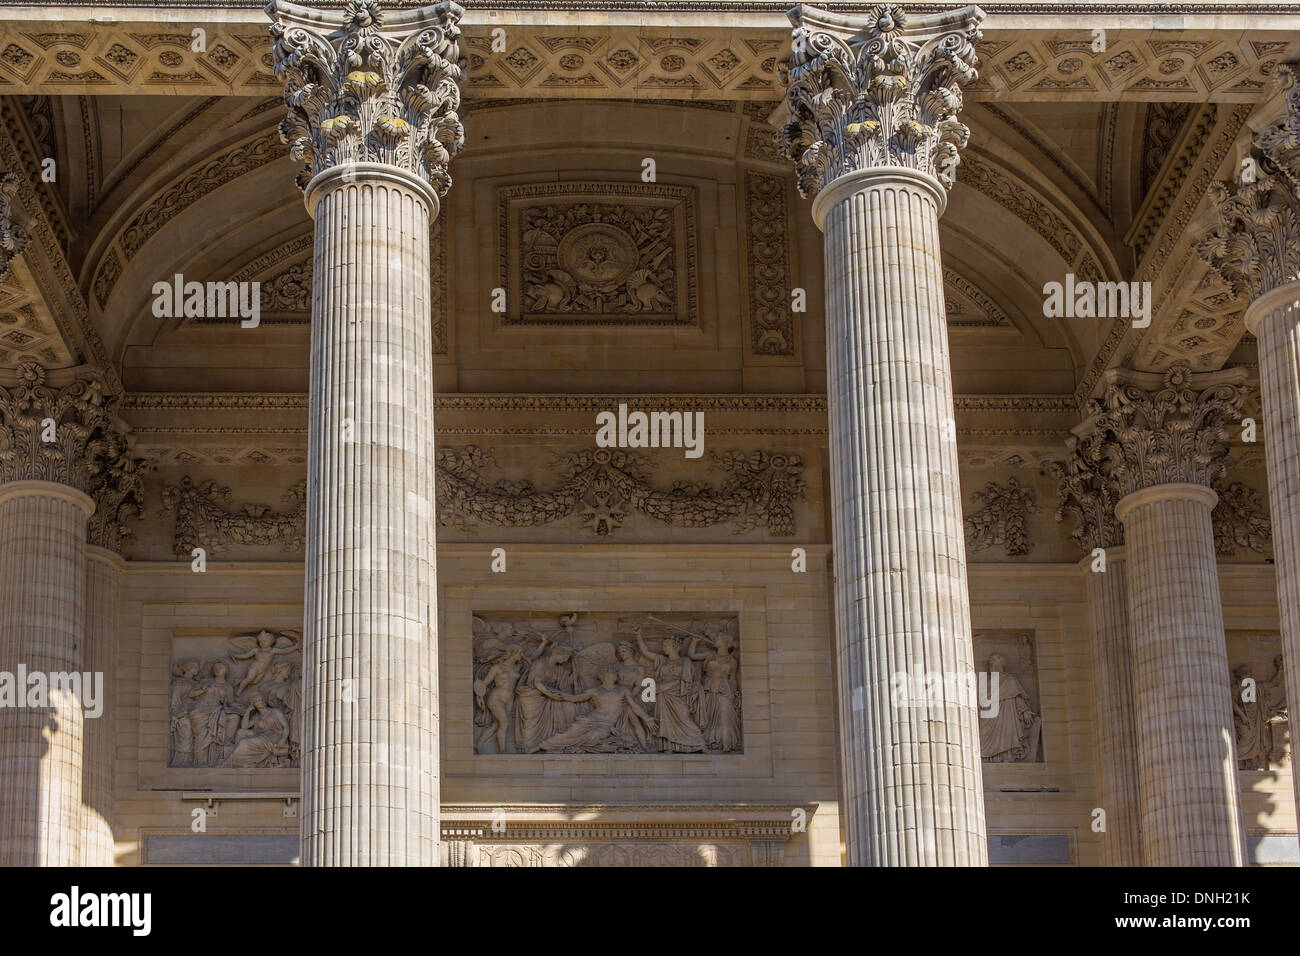 Il Pantheon, situato su Place du Pantheon IN SAINTE-GENEVIEVE MONTAGNA NEL CUORE DEL QUARTIERE LATINO. Esso premia persone illustri che hanno segnato la storia della Francia, 5° Arrondissement, Parigi (75), Francia Foto Stock